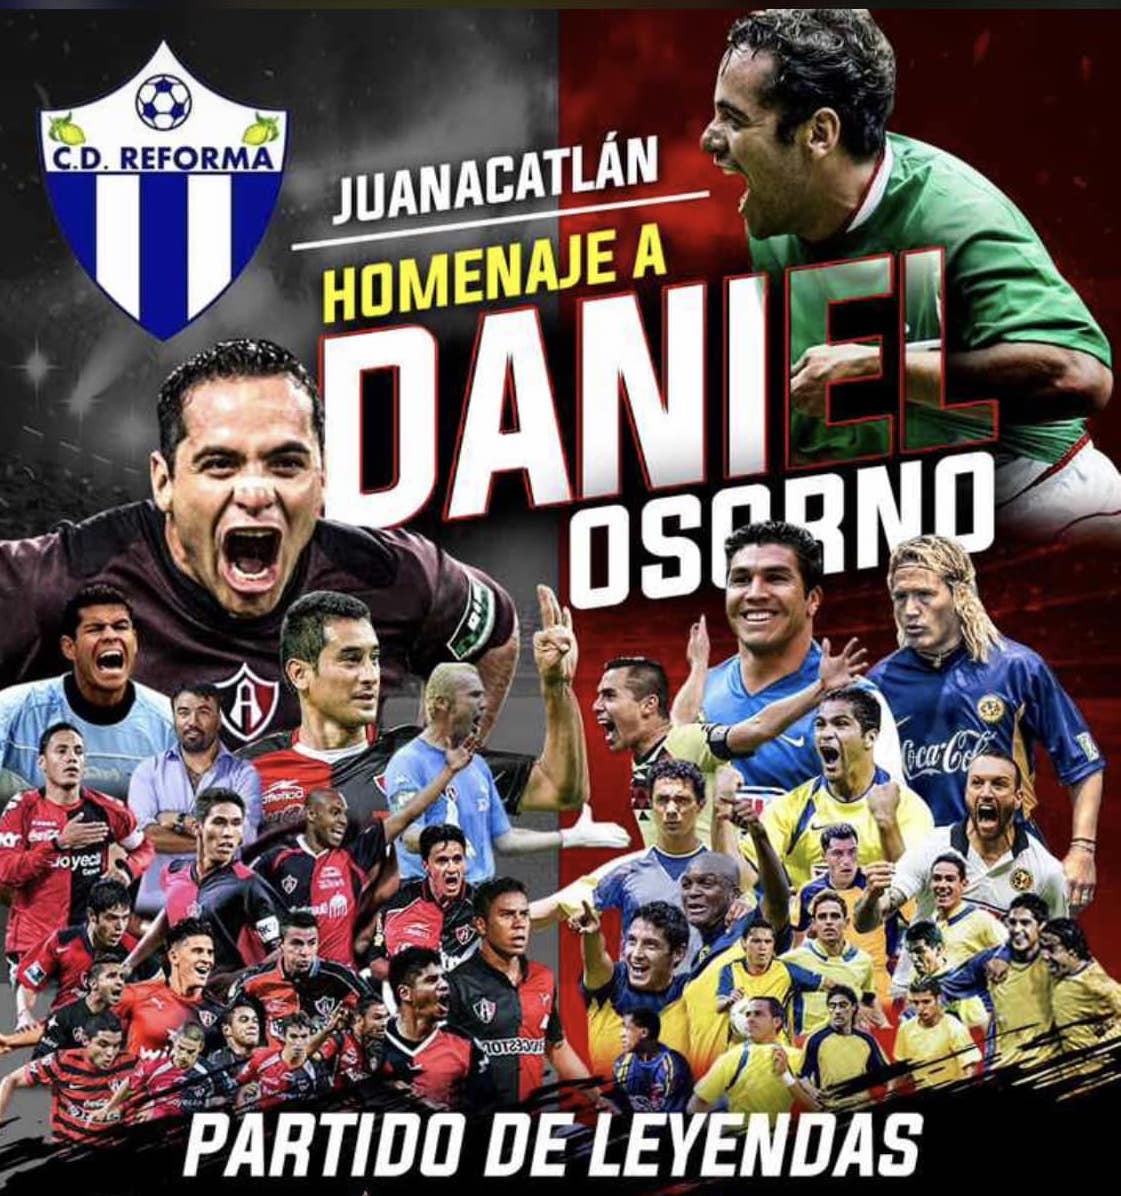 Harán homenaje a Daniel Osorno en Juanacatlán